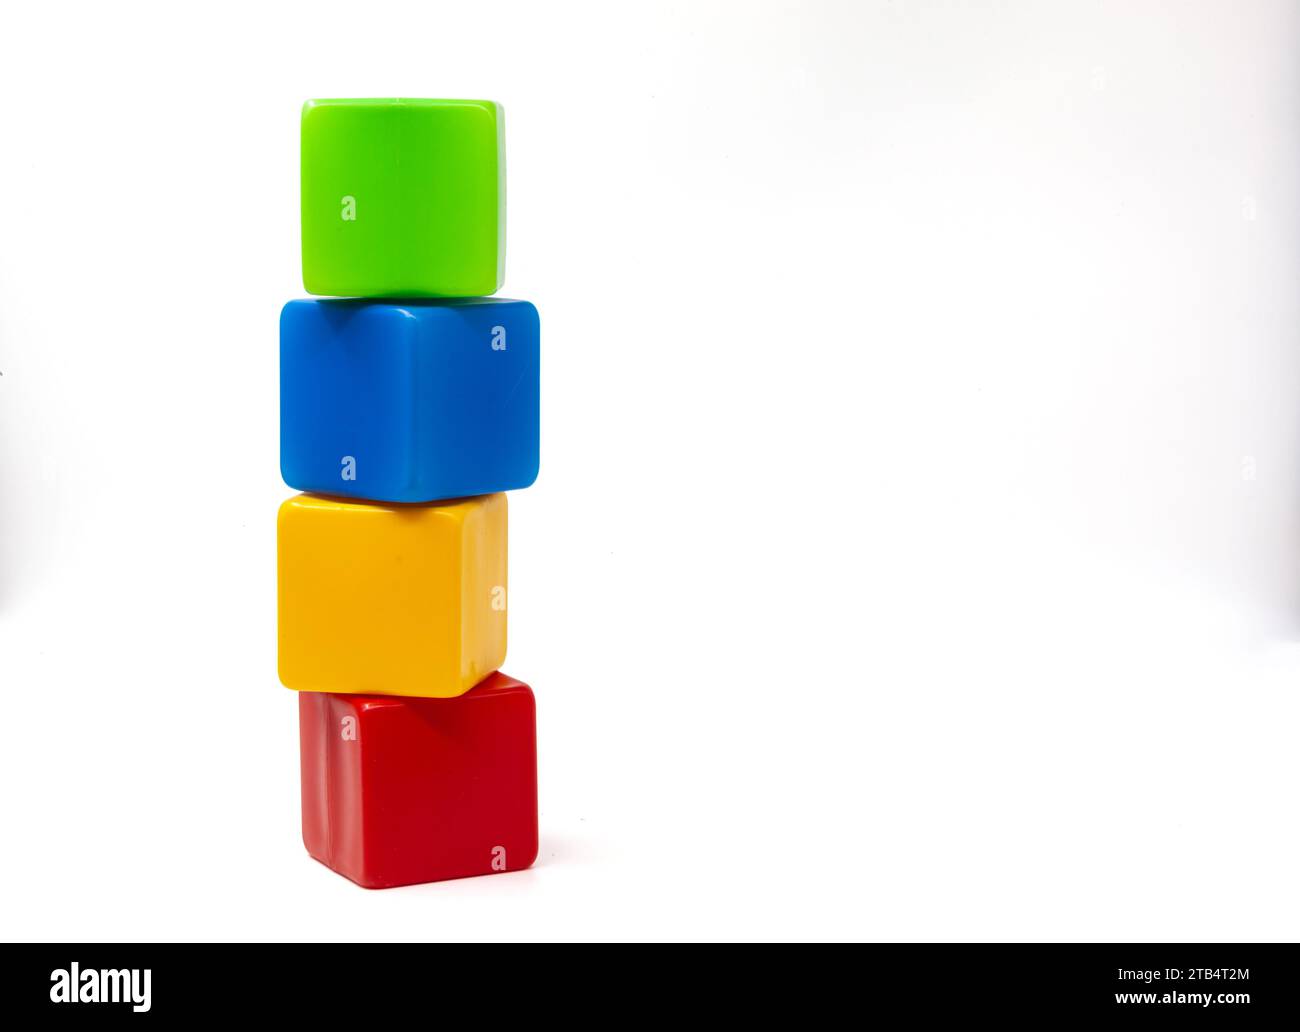 Mehrfarbige Plastikwürfel für Kinderspiele. Gelb und blau mit grünen Würfeln stehen oben auf Rot. Die Würfel sind mit einem Turm versehen. Eins auf eins. Stockfoto